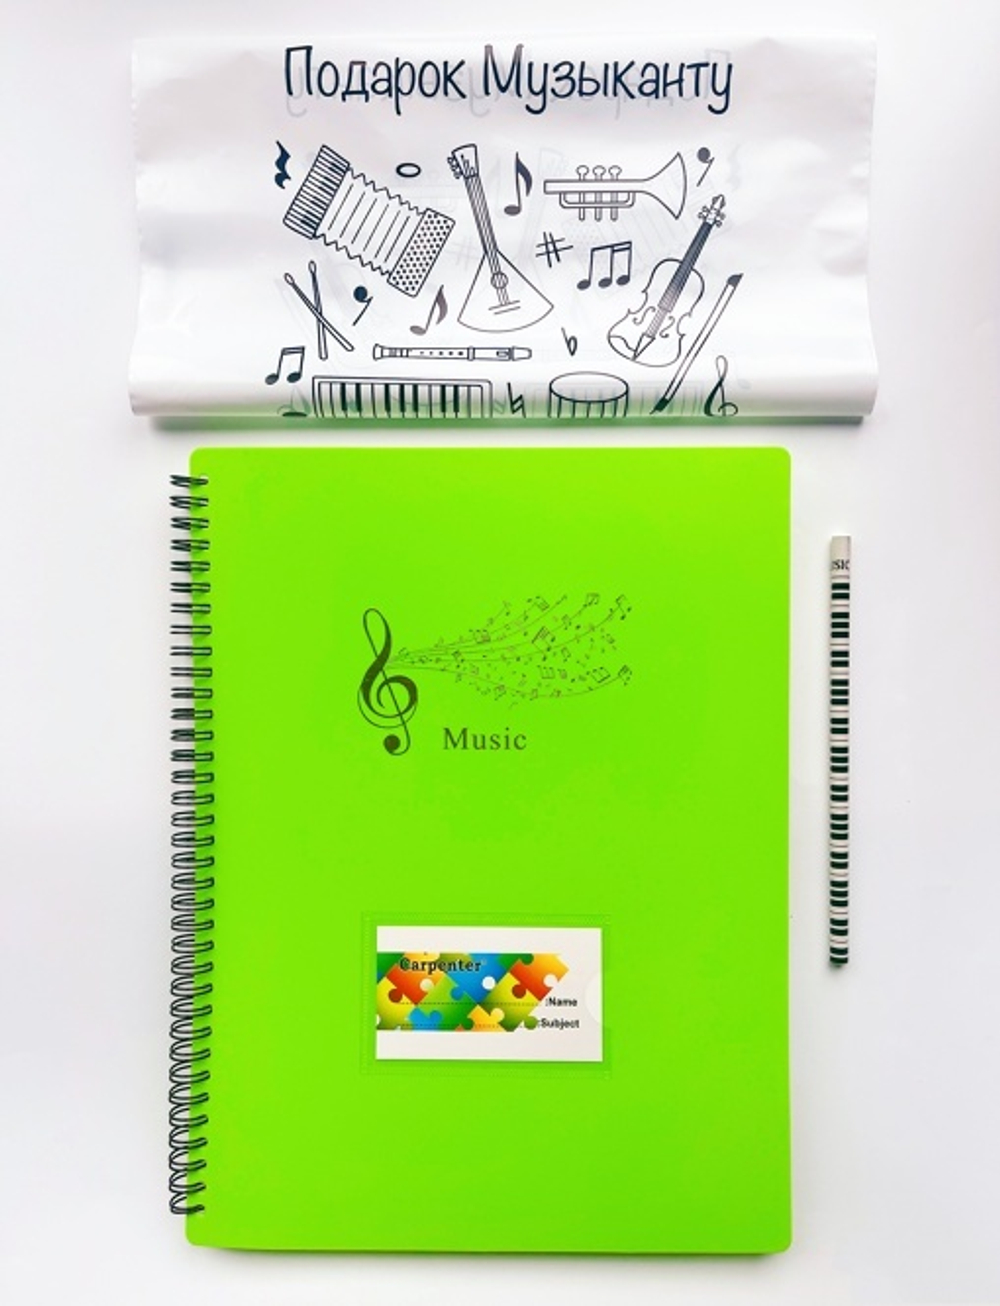 Профессиональная папка для нот "Музыка" с кармашком на обложке Синяя + подарок